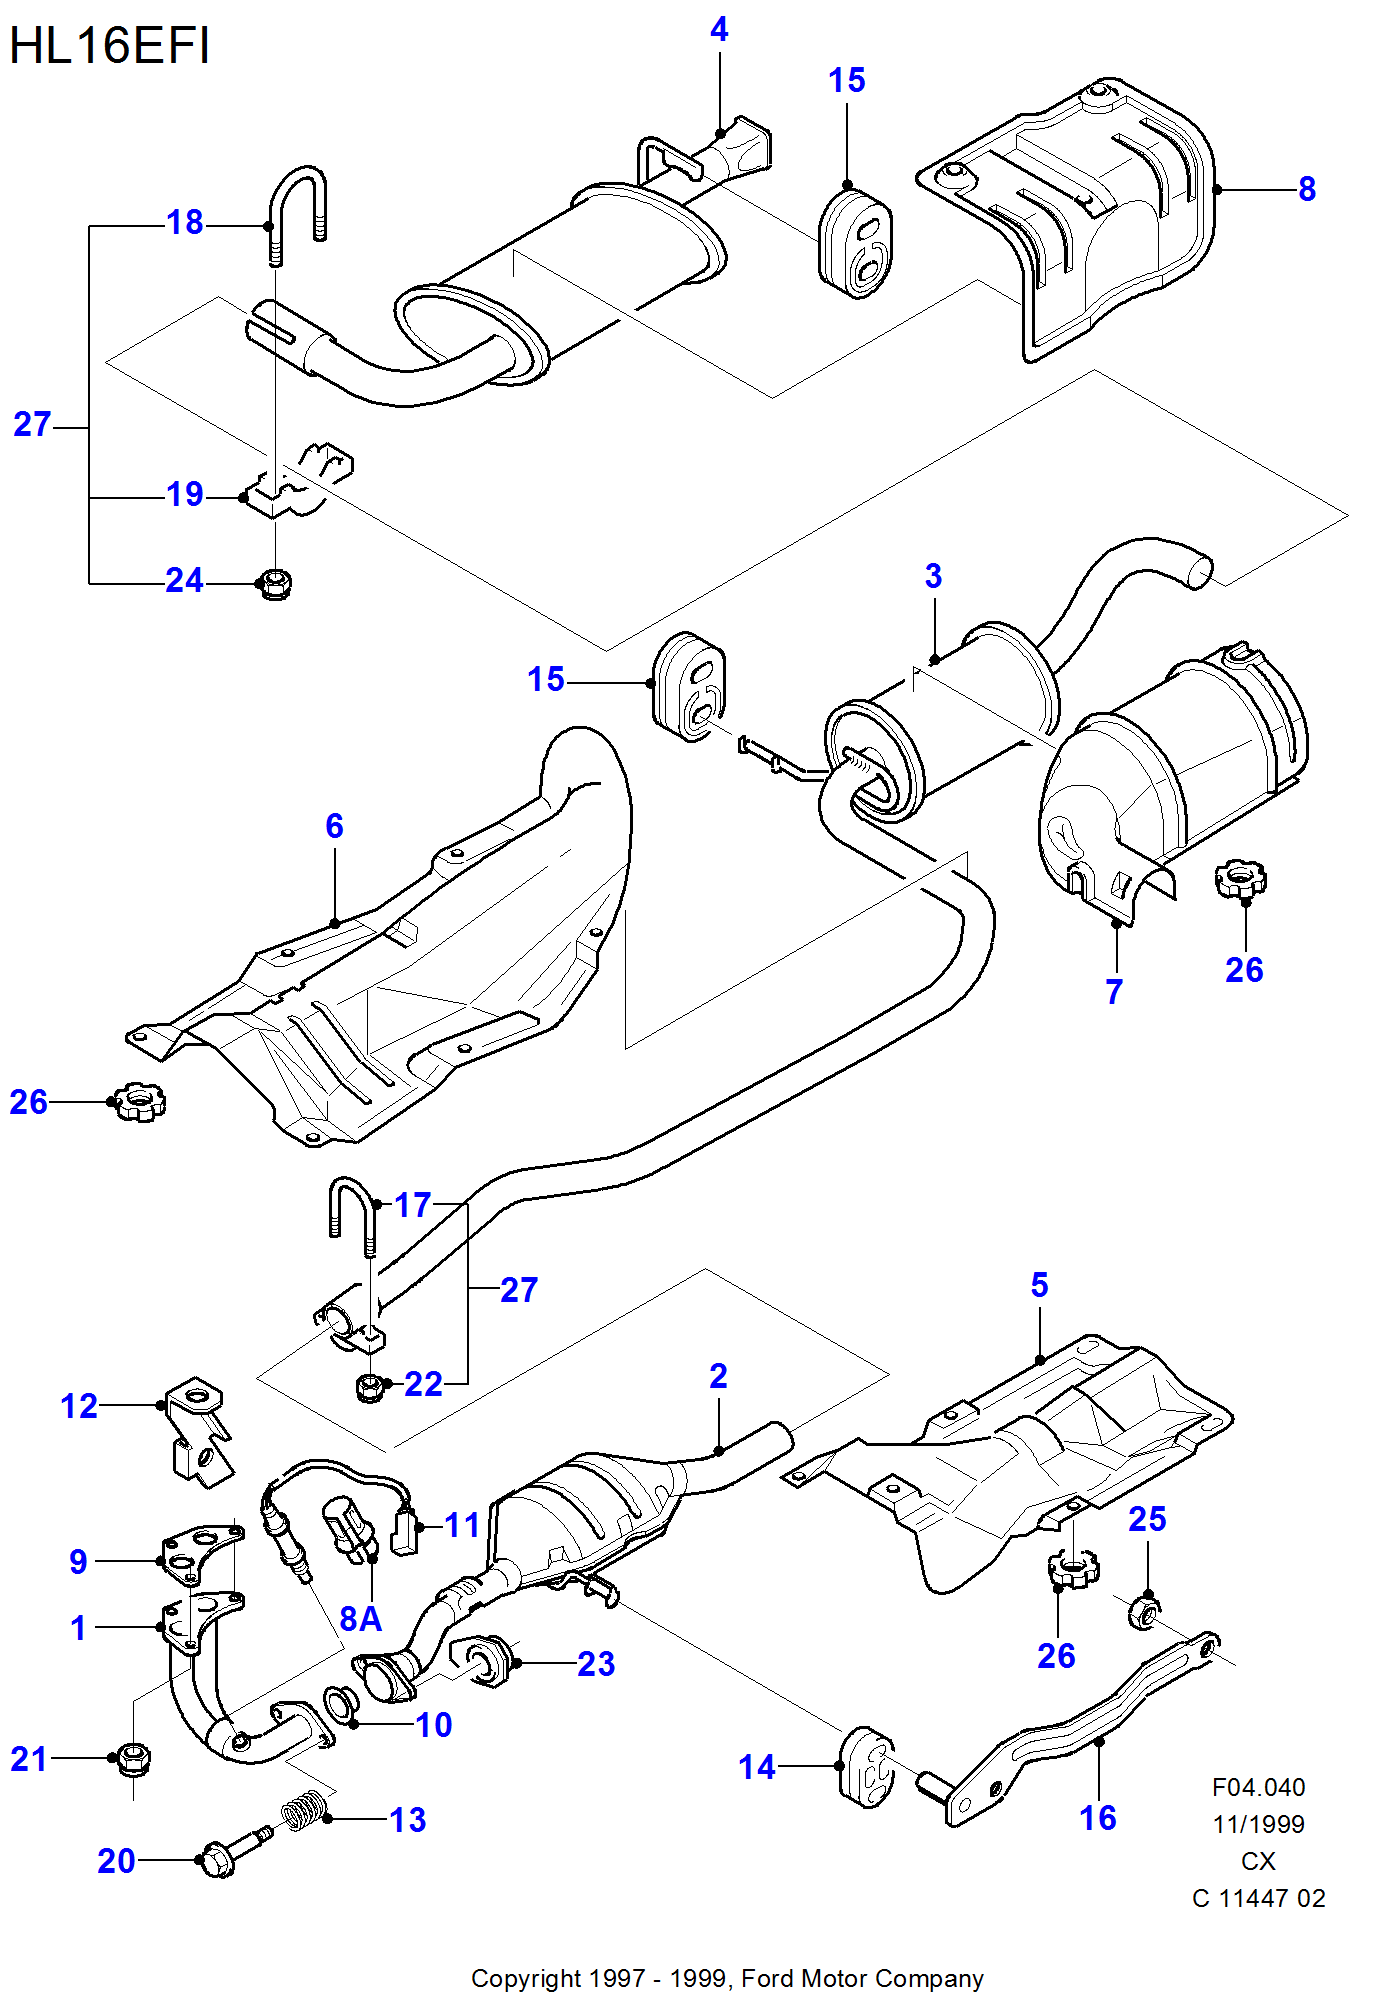 Exhaust System With Catalyst por Ford Fiesta Fiesta 1989-1996               (CX)